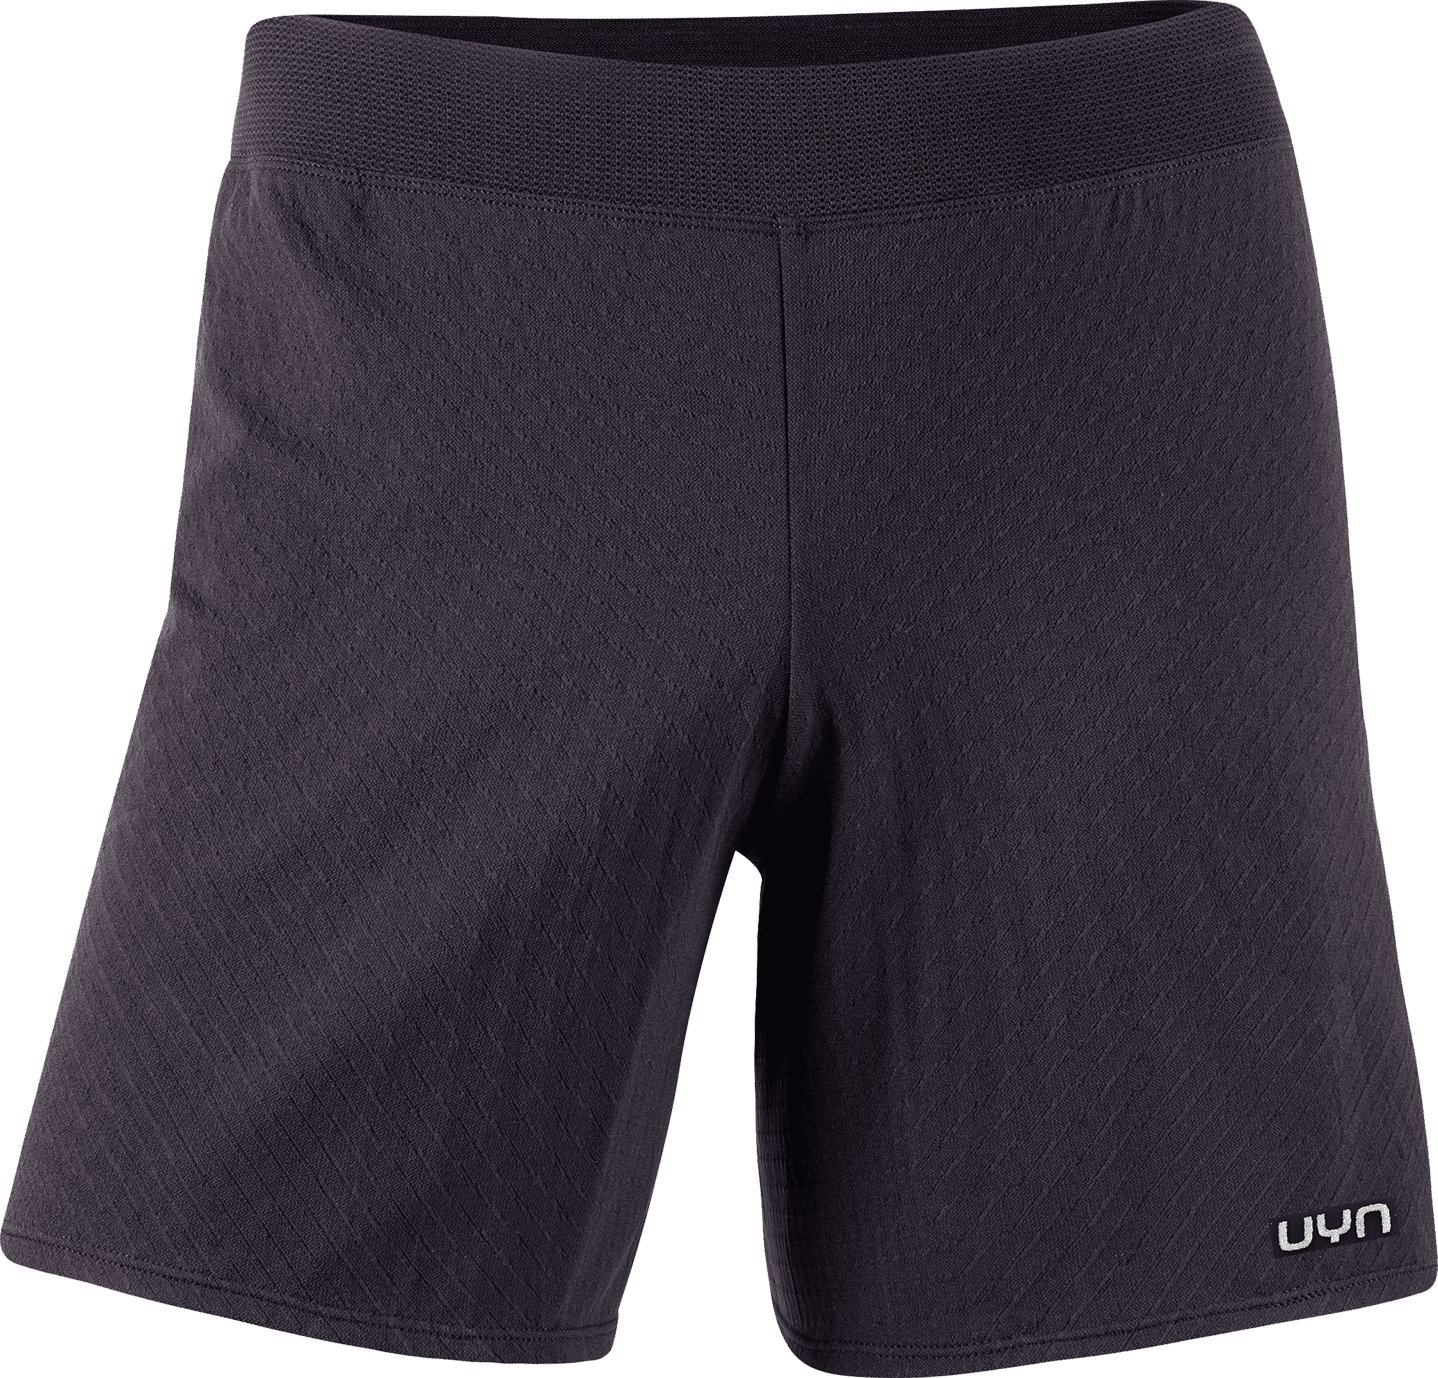 Uyn Marathon - Running shorts - Men's